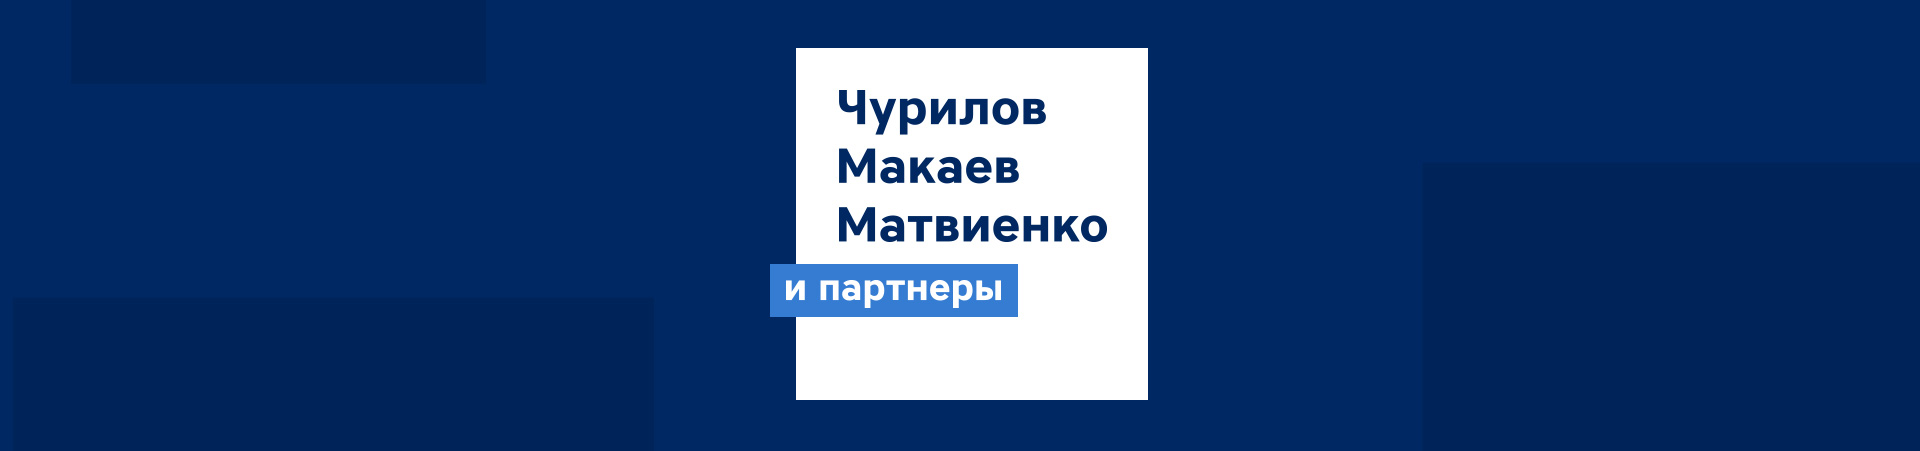 Юридическая компания «Чурилов, Макаев, Матвиенко и партнеры»